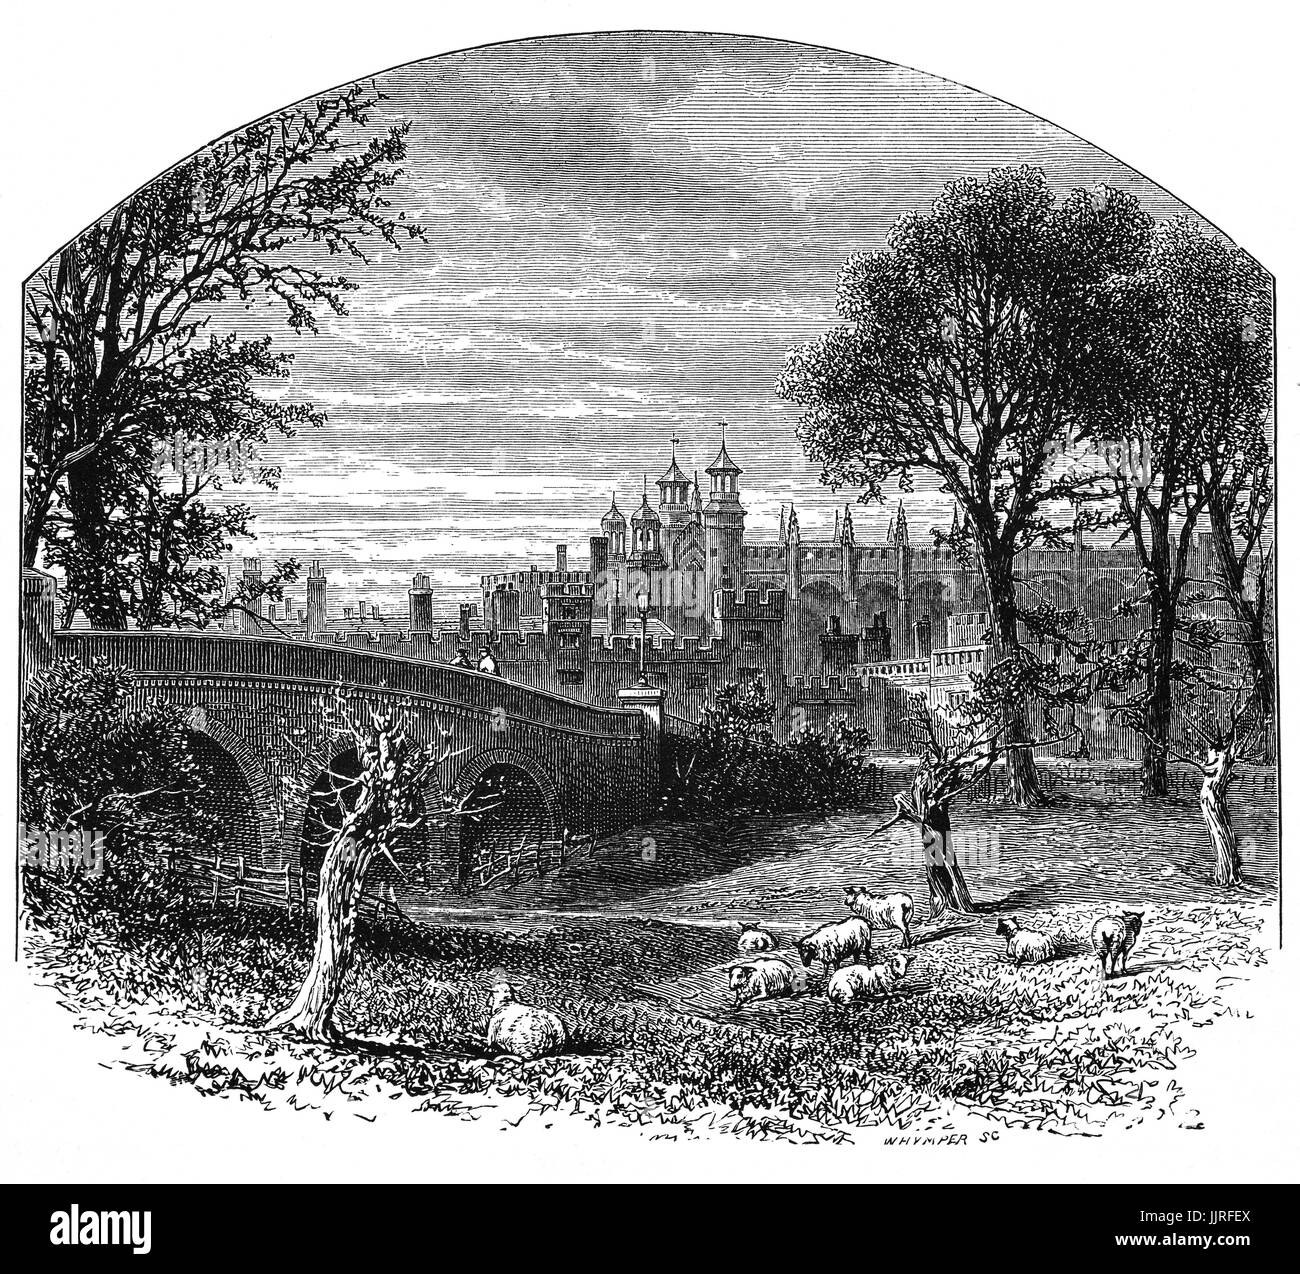 1870 : vu de la route de Slough, Eton College, un internat pour garçons indépendante fondée en 1440 par le Roi Henry VI comme 'le King's College Notre Dame de l'Eton en plus Wyndsor', Eton, Berkshire, près de Windsor, en Angleterre. Banque D'Images